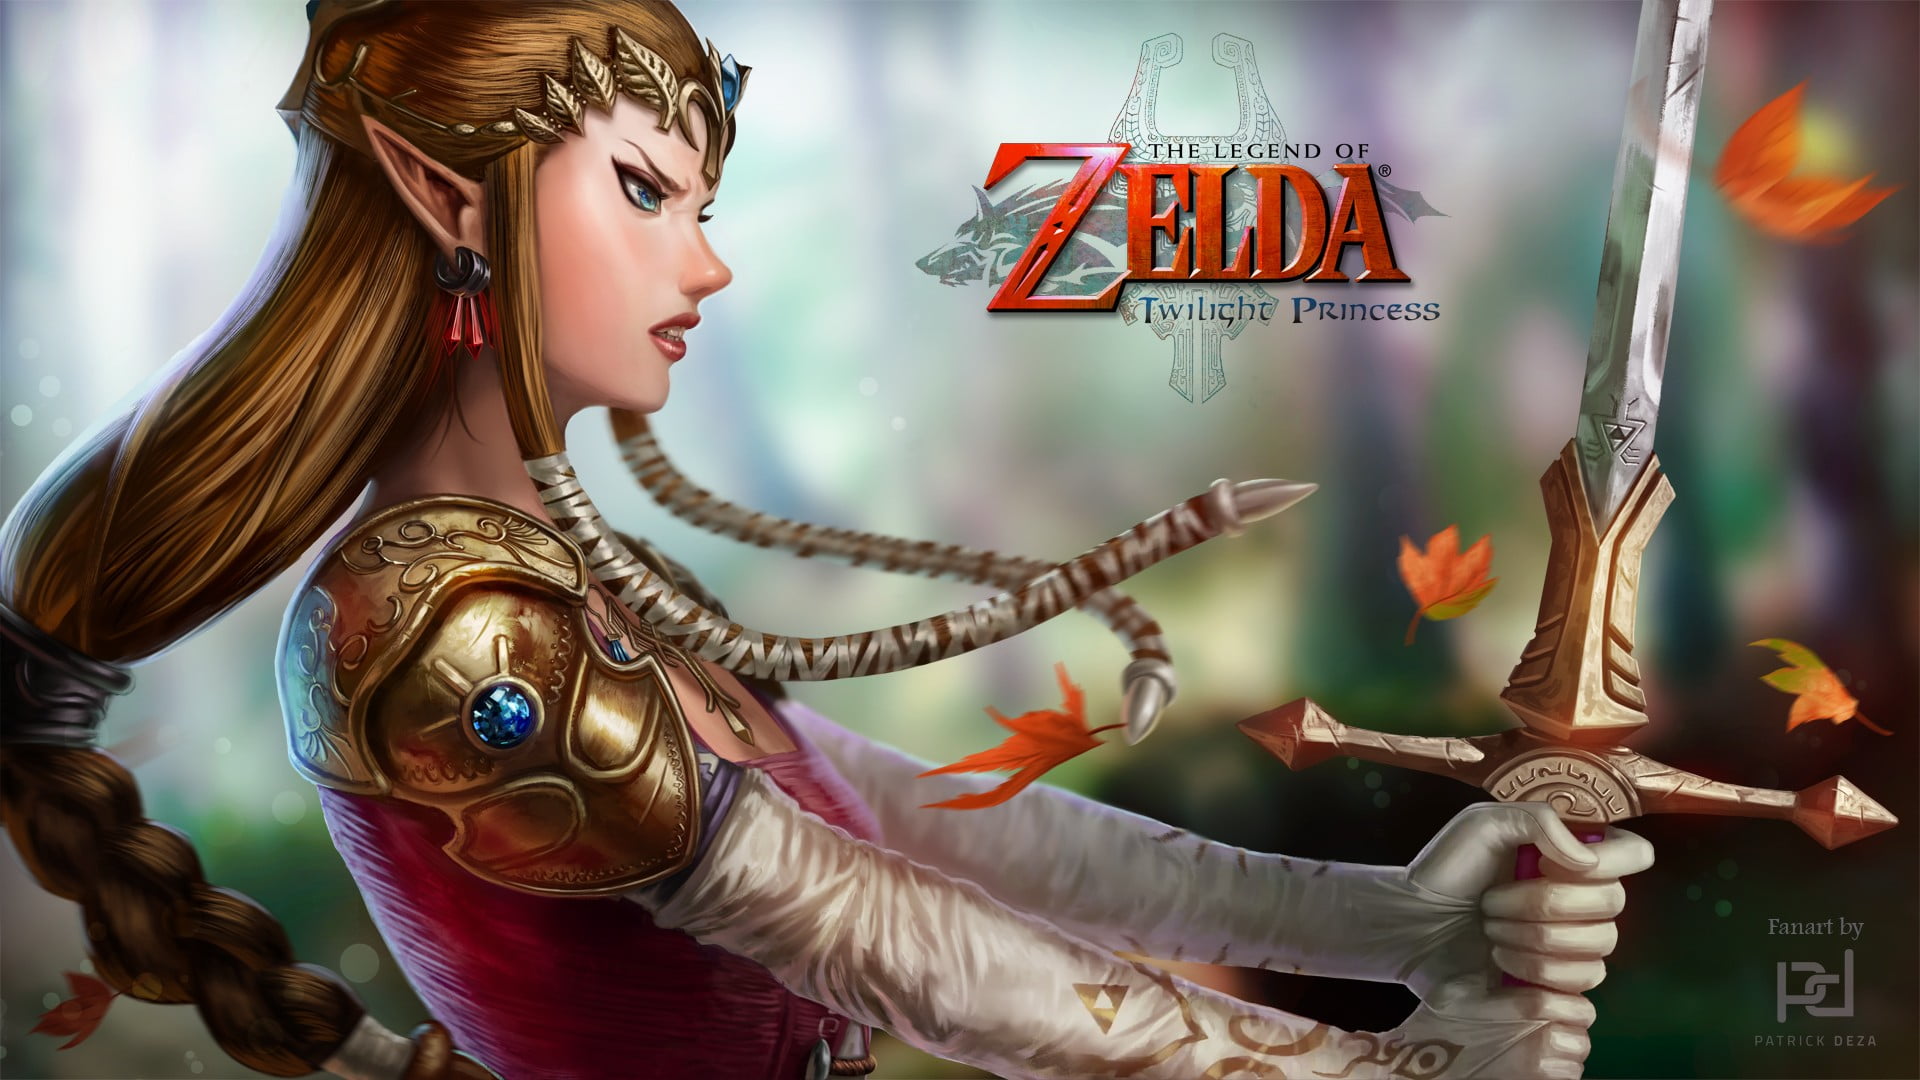 Zelda Twilight Princess digital wallpaper, The Legend of Zelda: Twilight Pr...